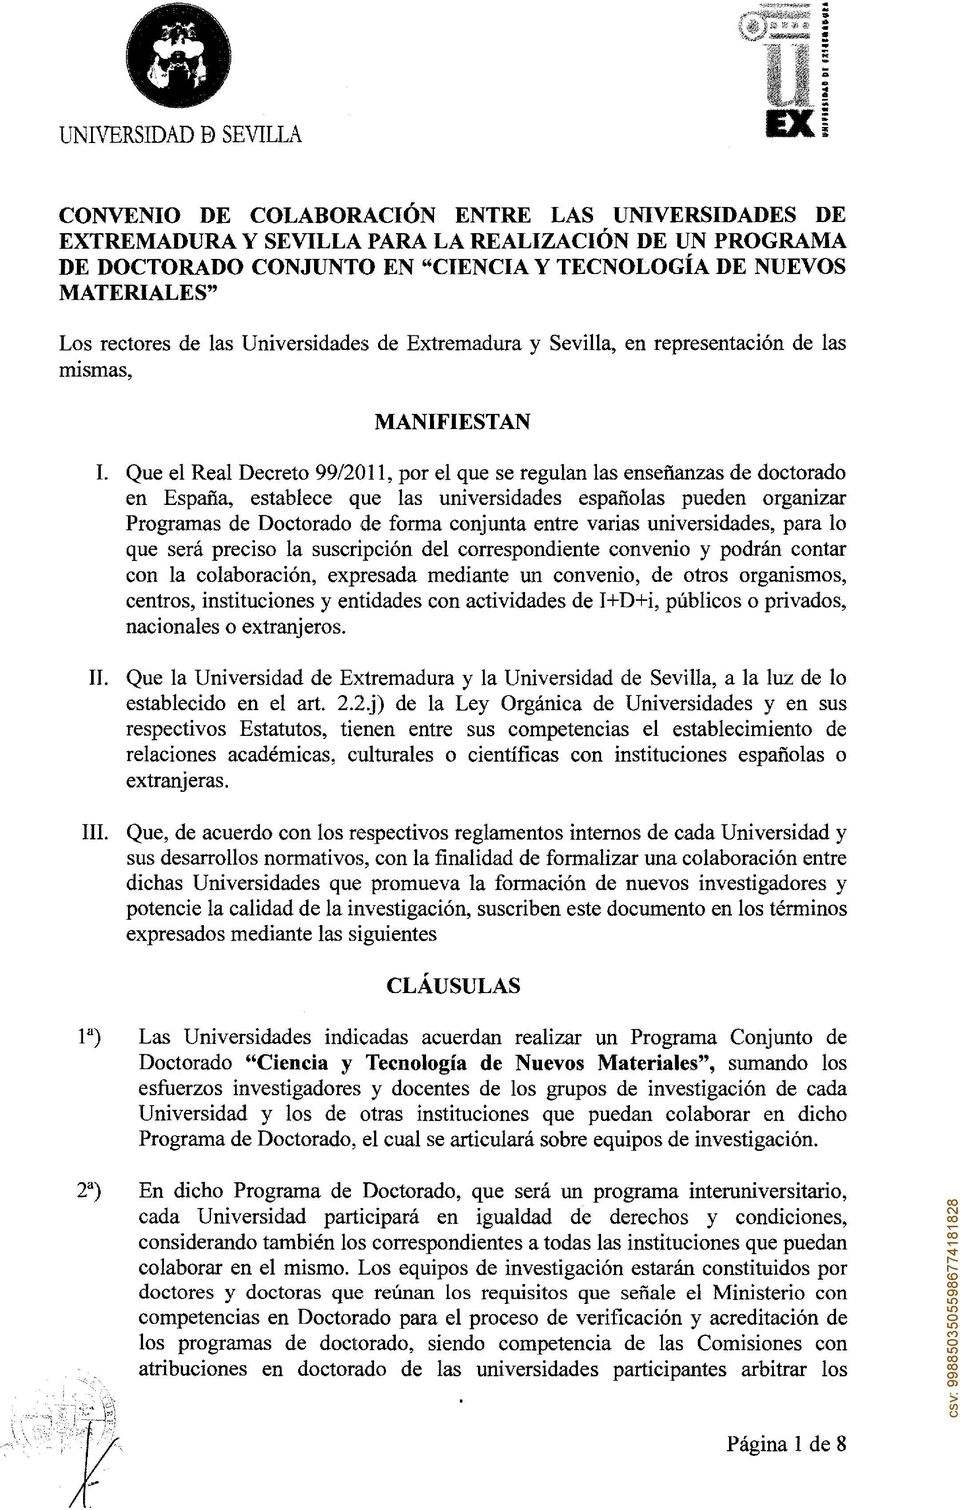 Que el Real Decreto 99/2011, por el que se regulan las enseñanzas de doctorado en España, establece que las universidades españolas pueden organizar Programas de Doctorado de forma conjunta entre